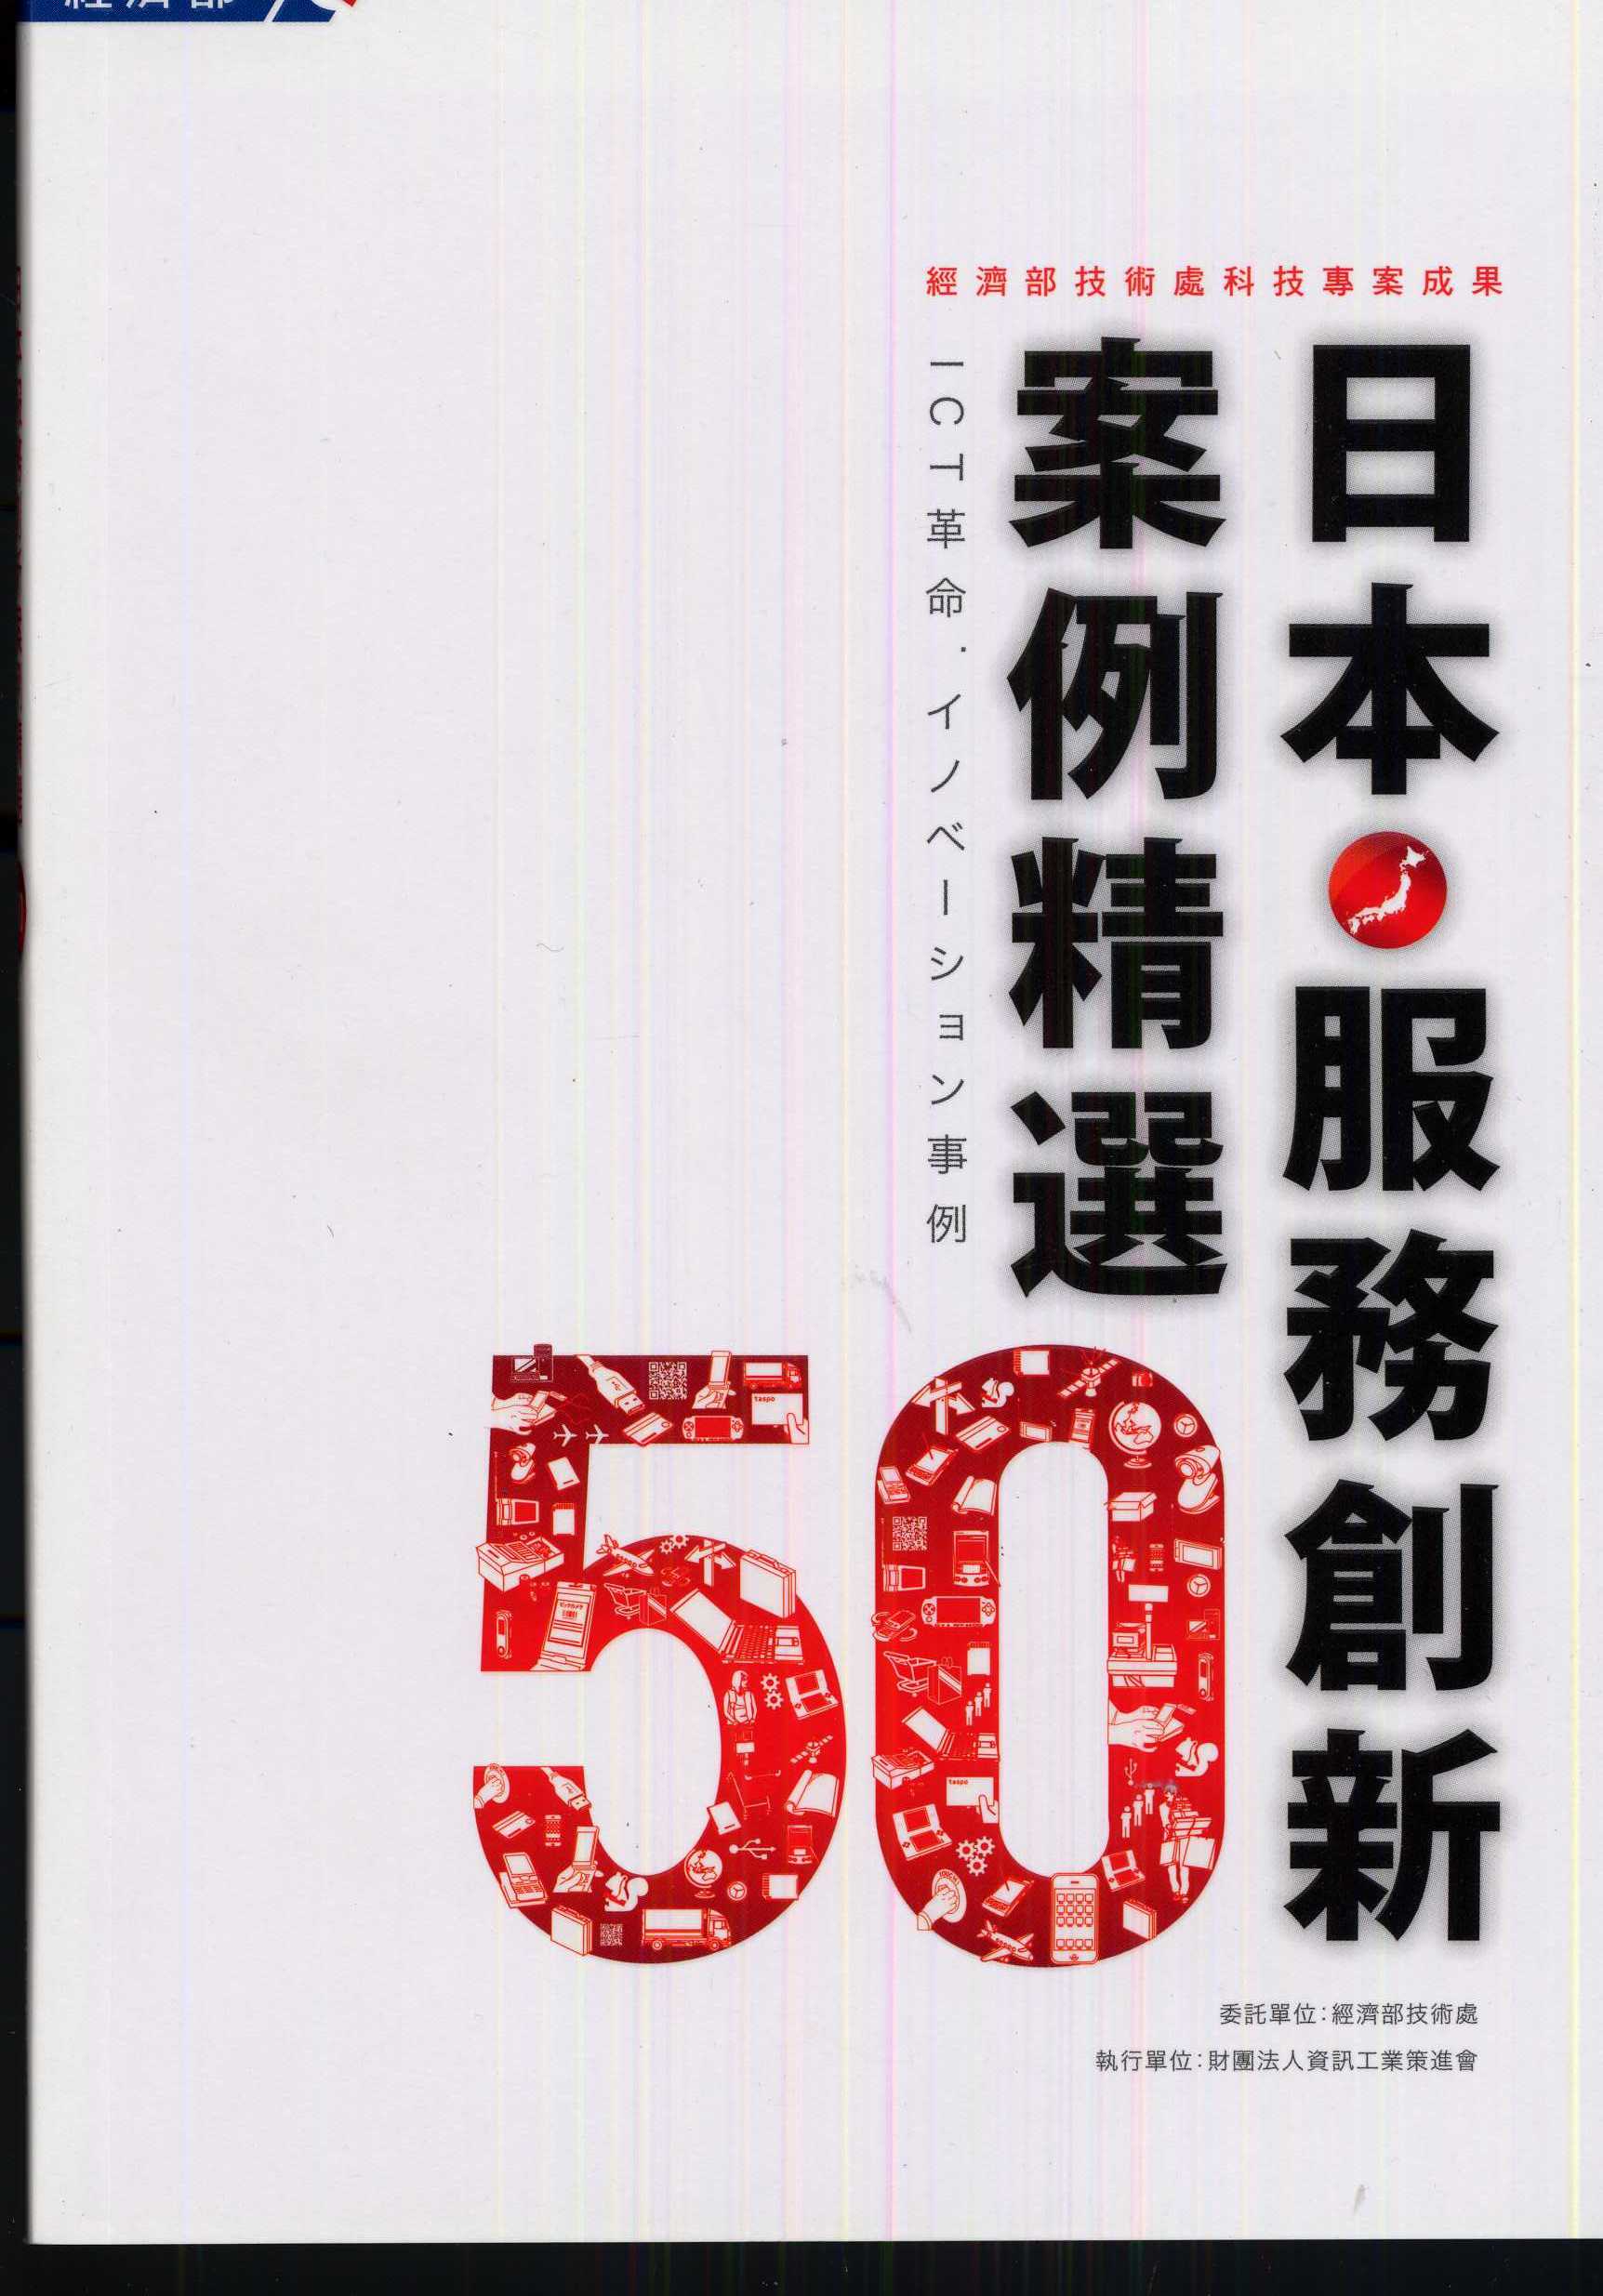 日本服務創新案例精選50